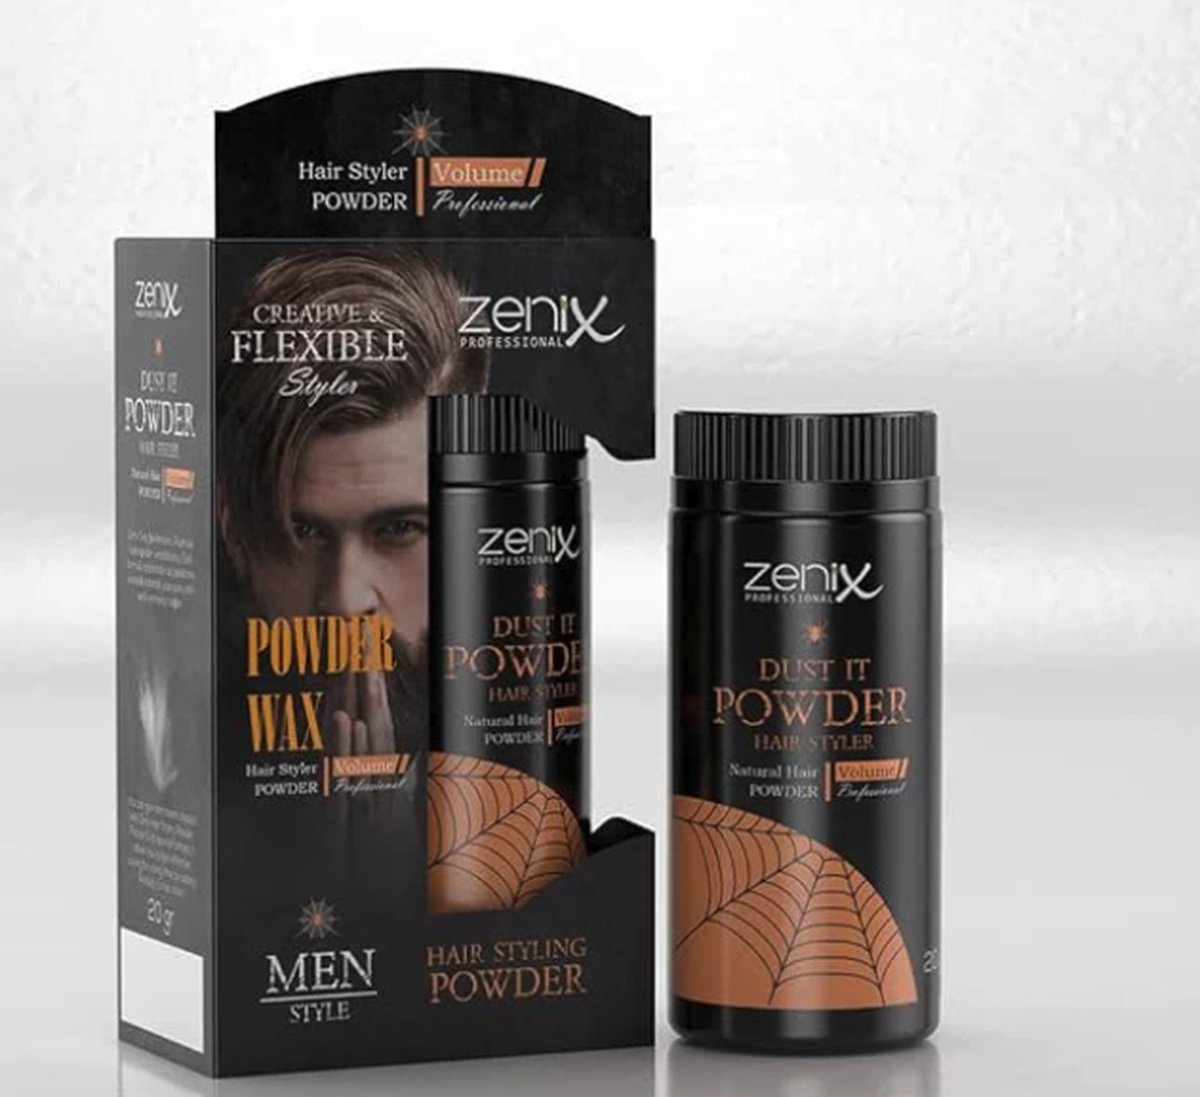 Zenix men series hair style powder wax natural - 20 gr - volume poeder